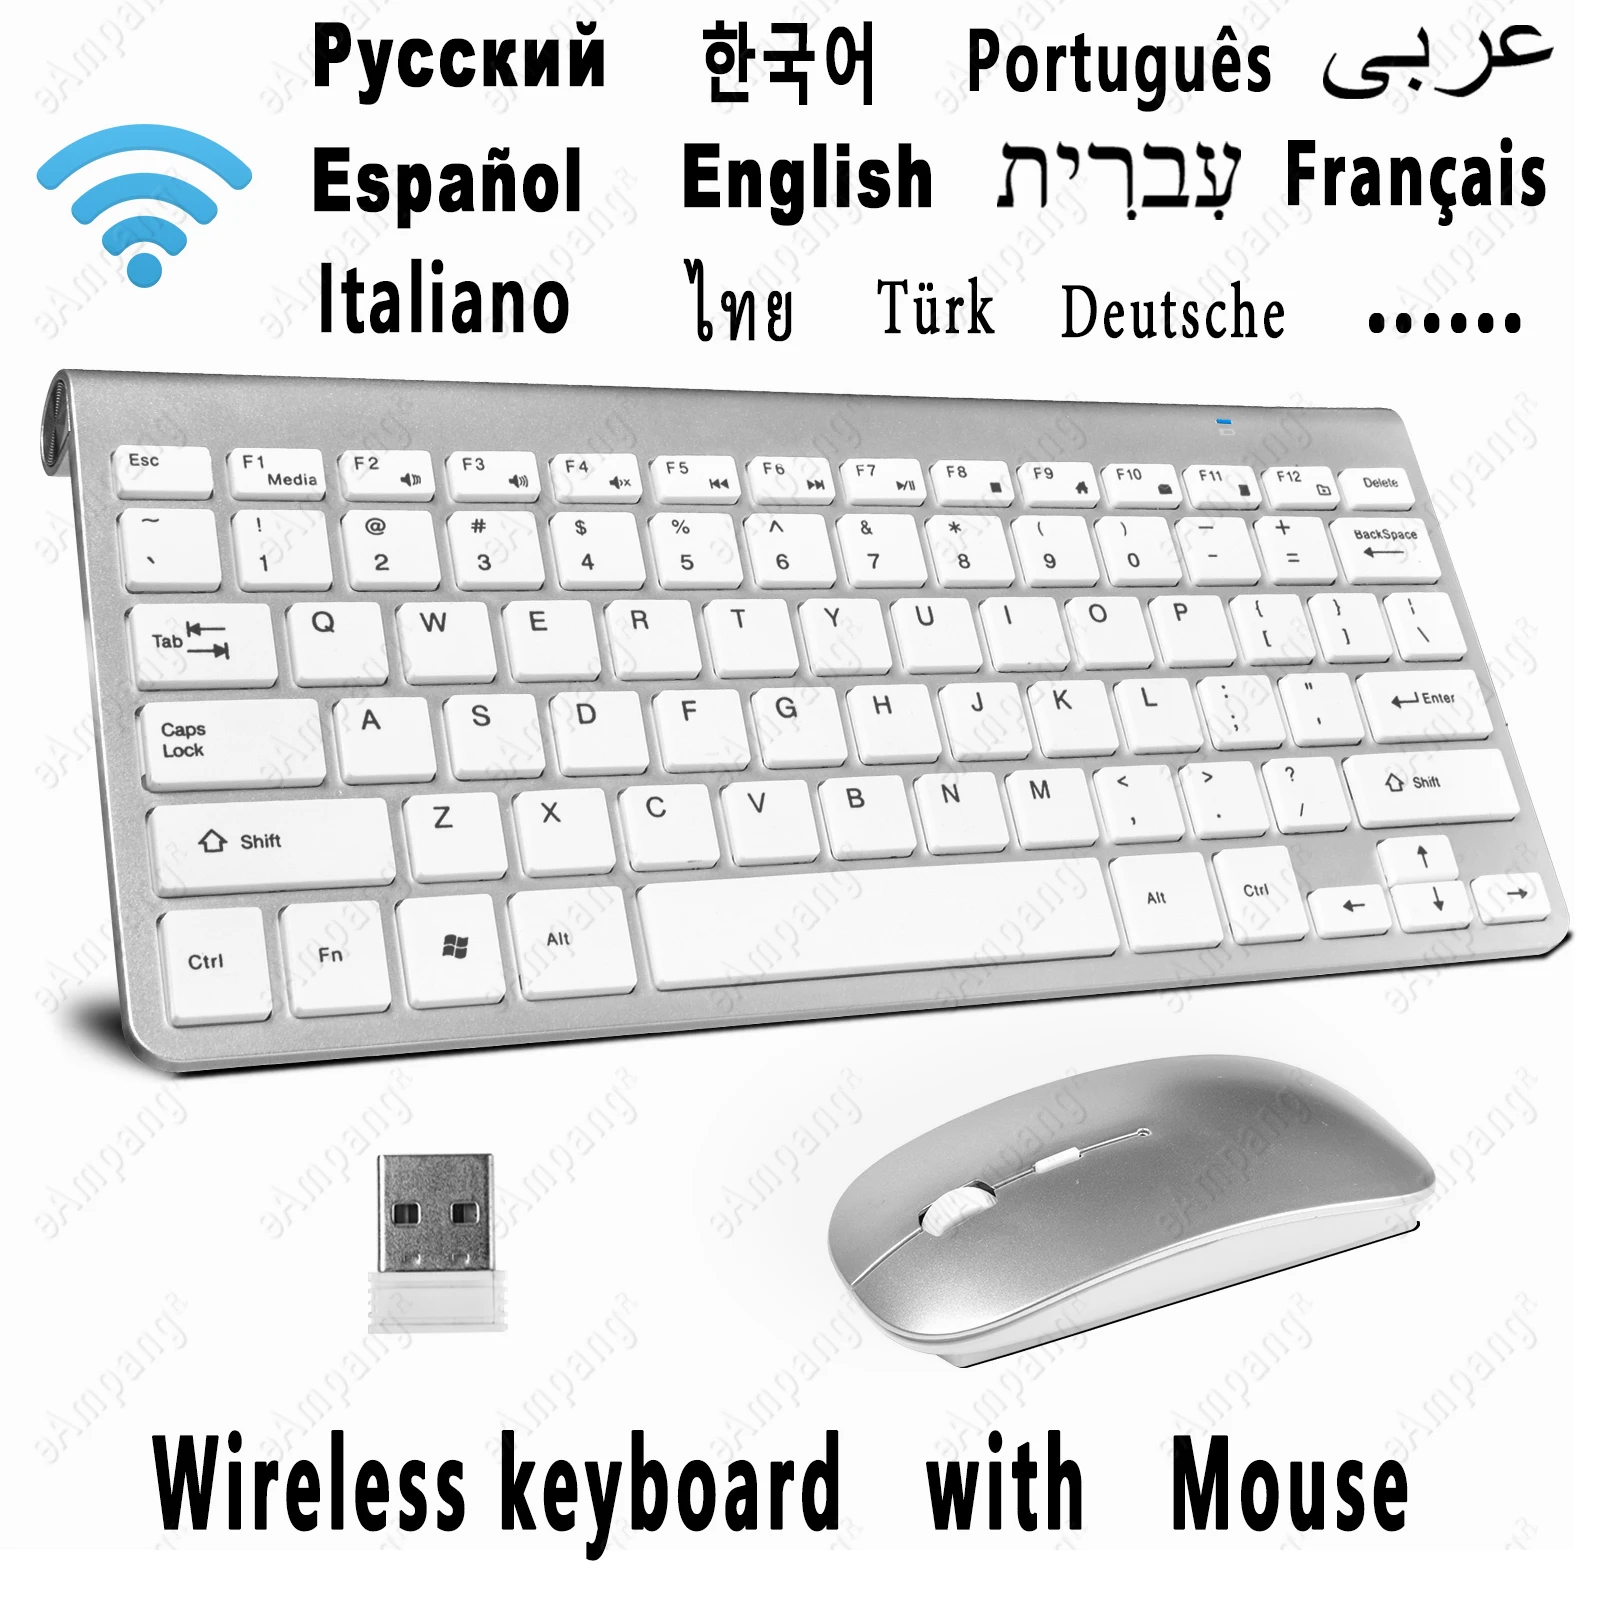 

Беспроводная клавиатура, мышь, комбинированная Клавиатура для ноутбука, планшета Mac, настольного ПК, компьютера, русская, испанская, Арабска...